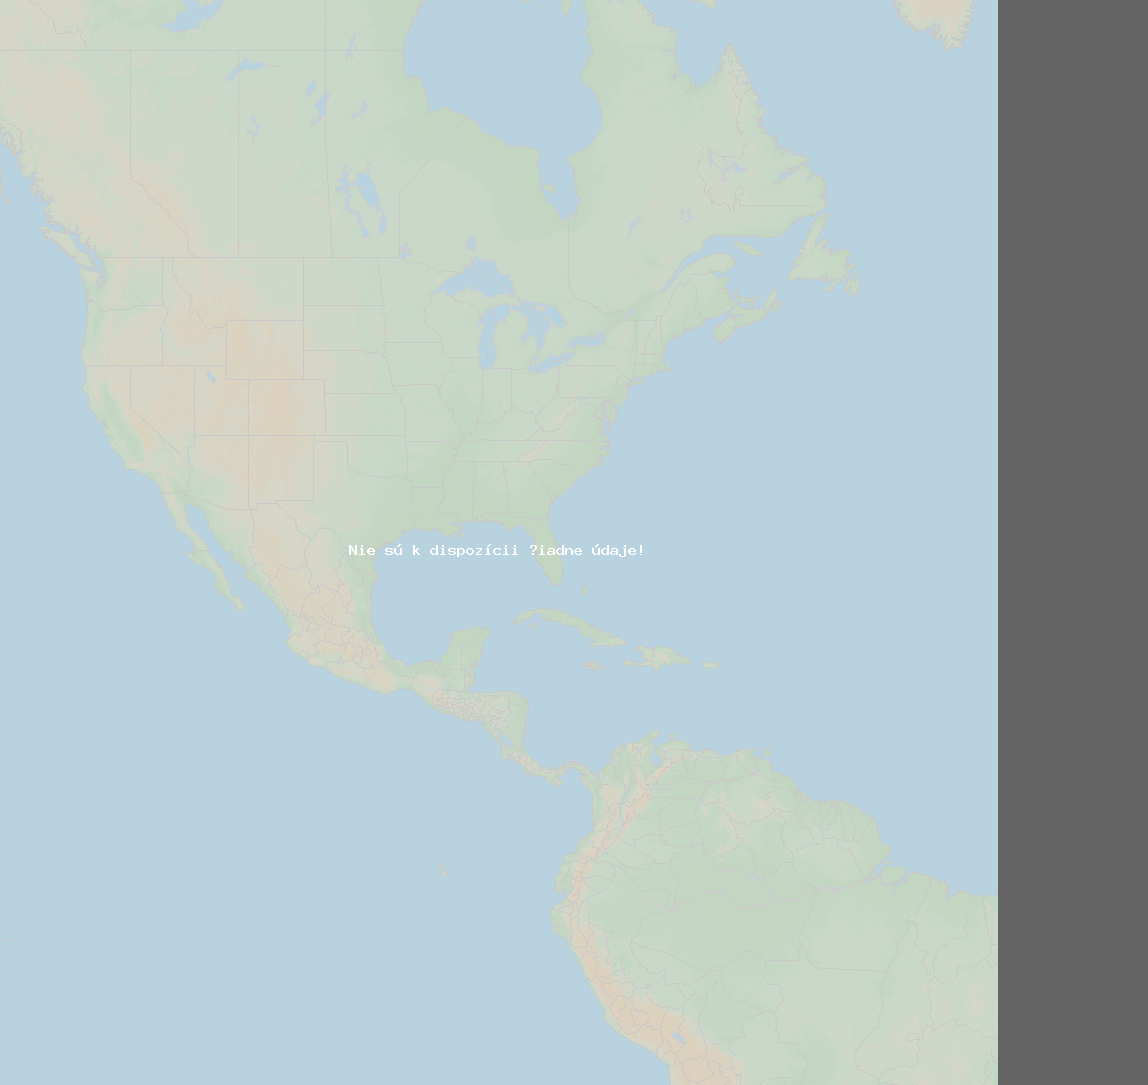 Pomer bleskov (Stanica Lawrence-Dade2) North America 2019 Apríl